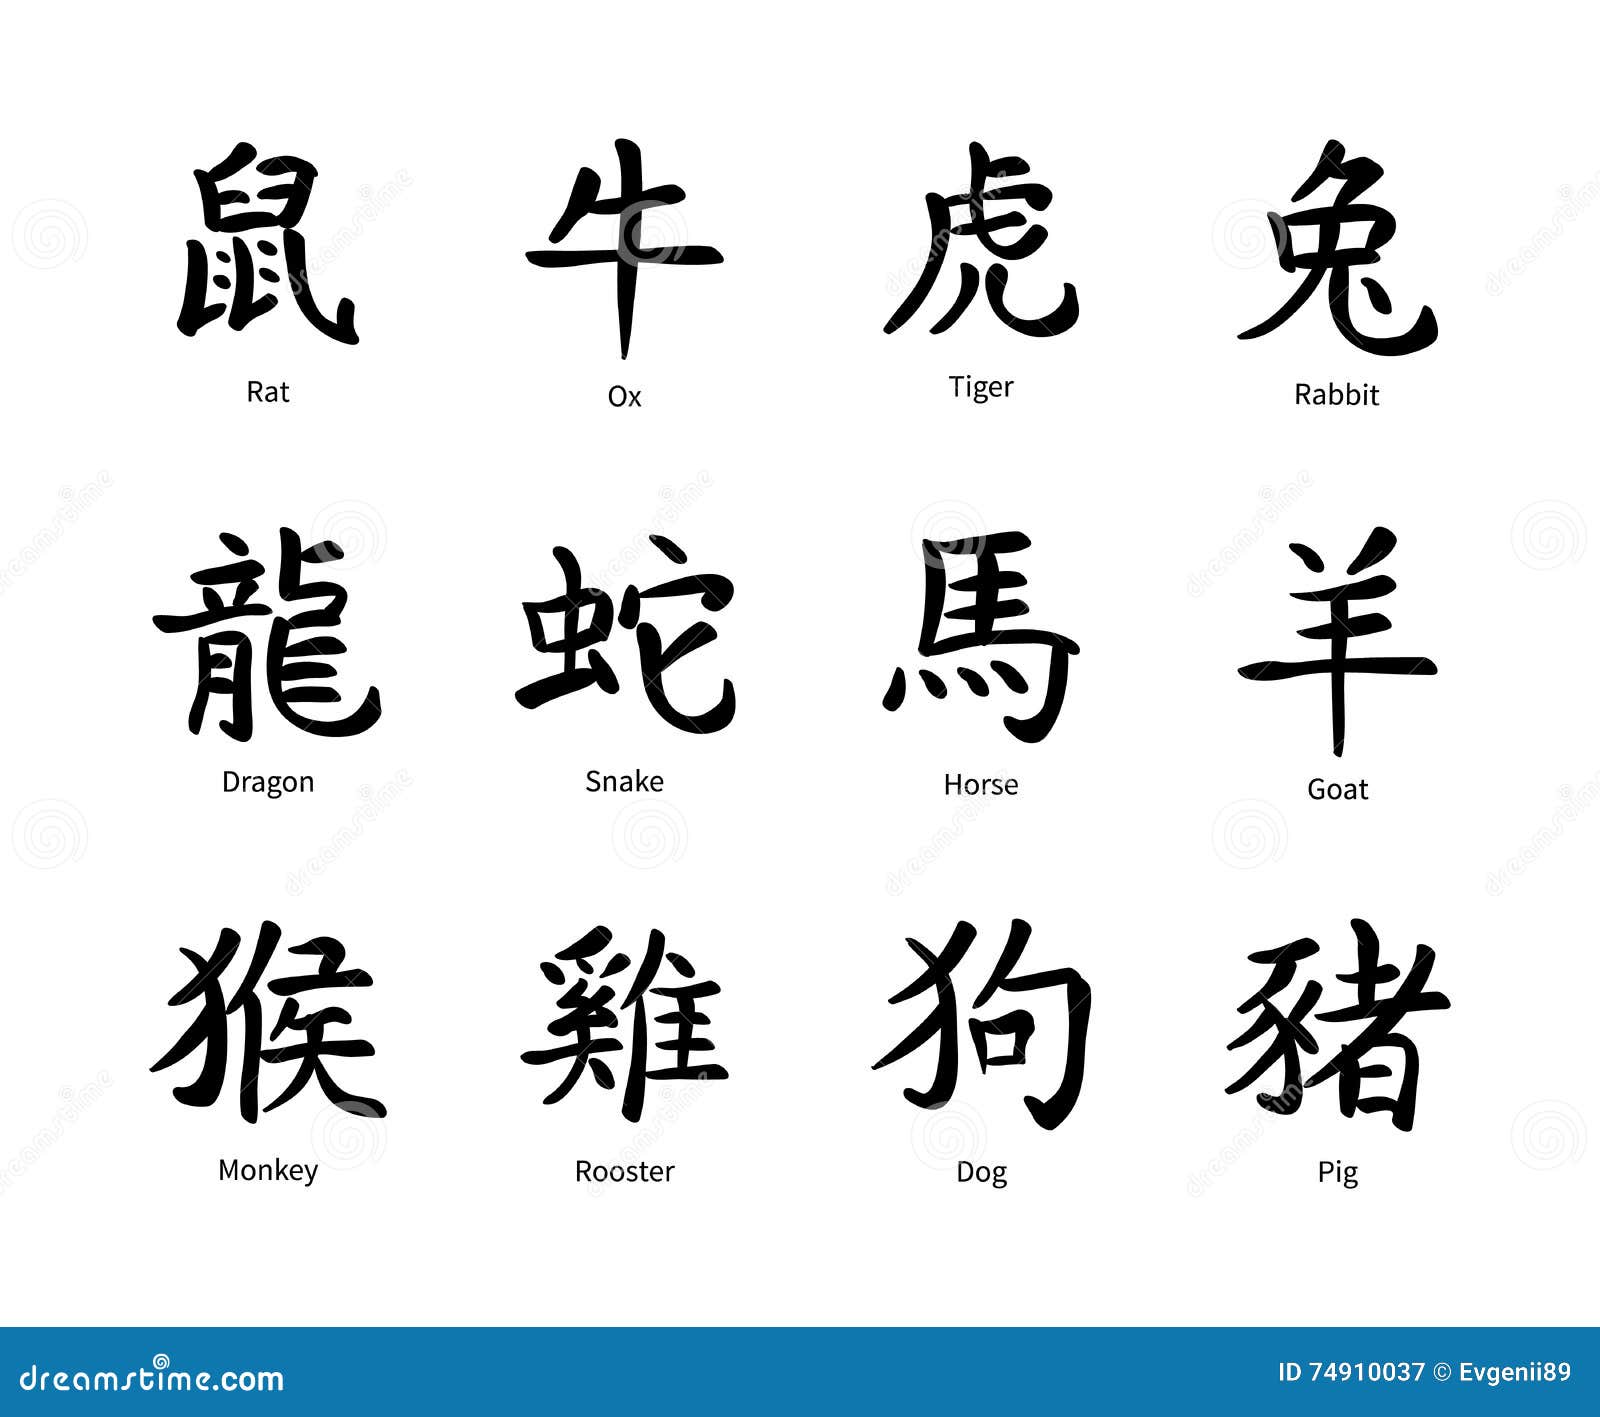 Знаки зодиака на китайском. Китайские иероглифы тату. Тату китайские иероглифы знаки зодиака. Японские символы тату. Китайский иероглиф Телец.